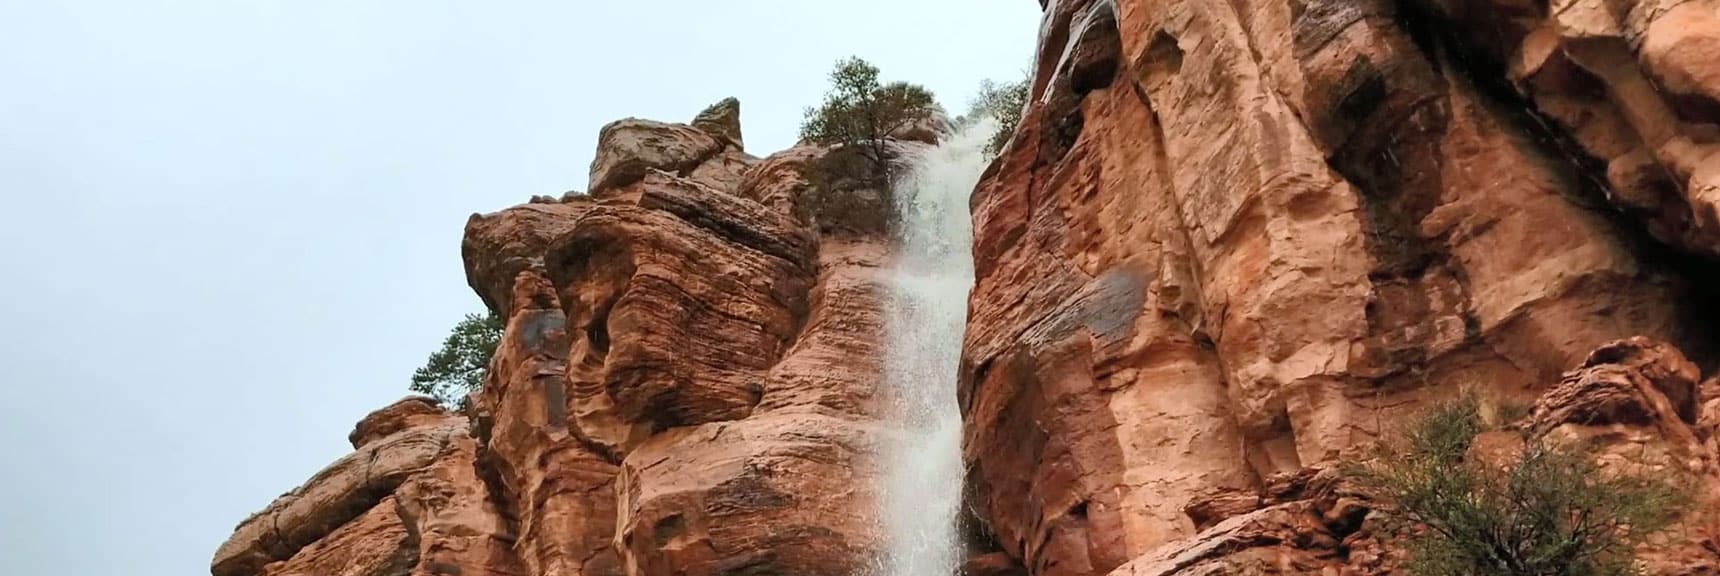 Waterfall on Middle Oak Creek Trail Near Red Rock Park, Nevada